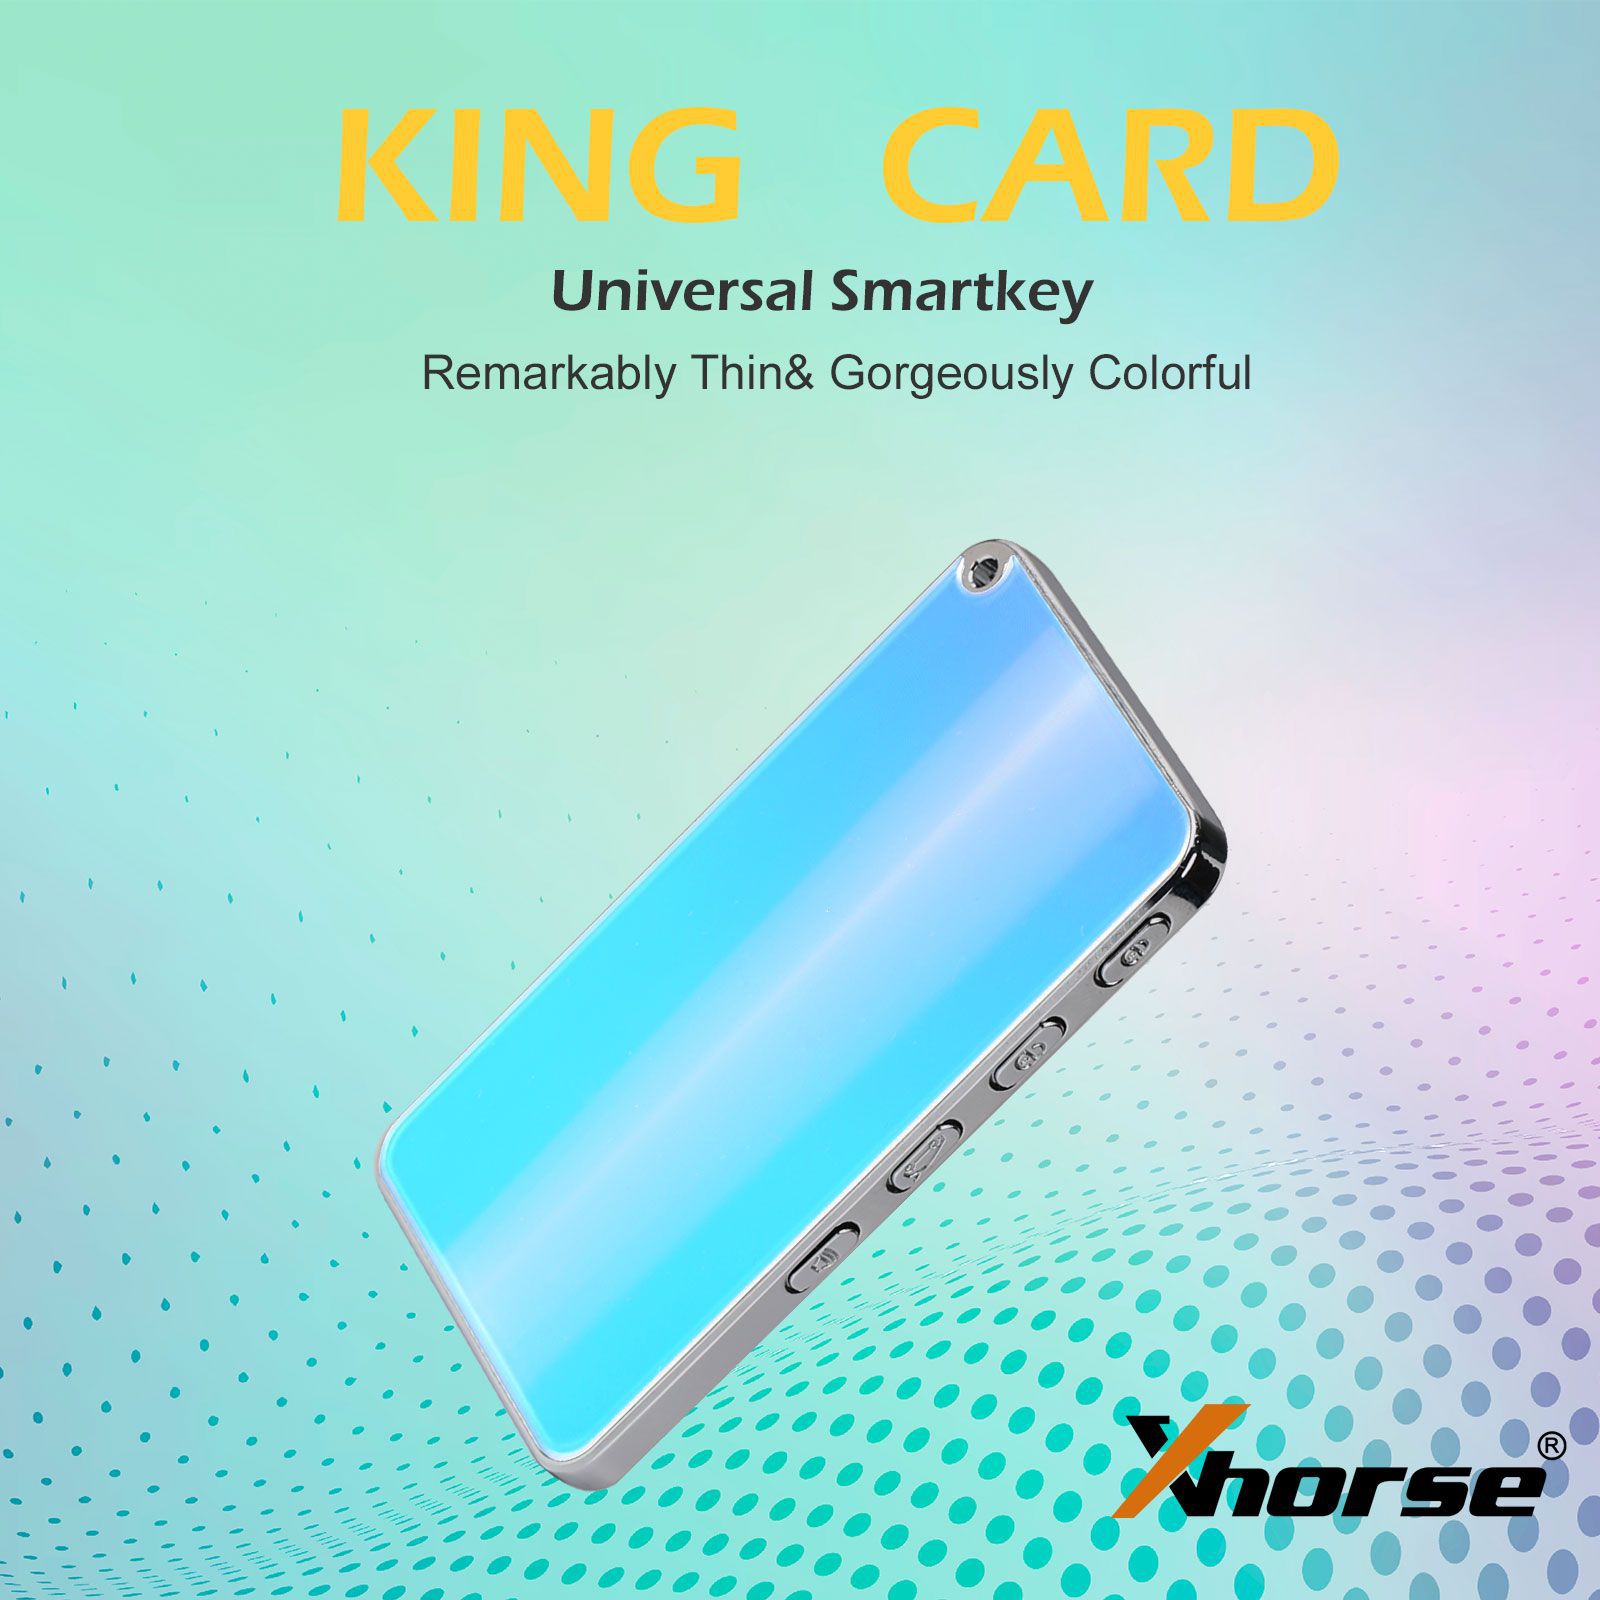 Xhorse XSKC04EN XSKC05EN King Card Key Slimmest Universal Smart Remote 4 Tasten Schlüssel